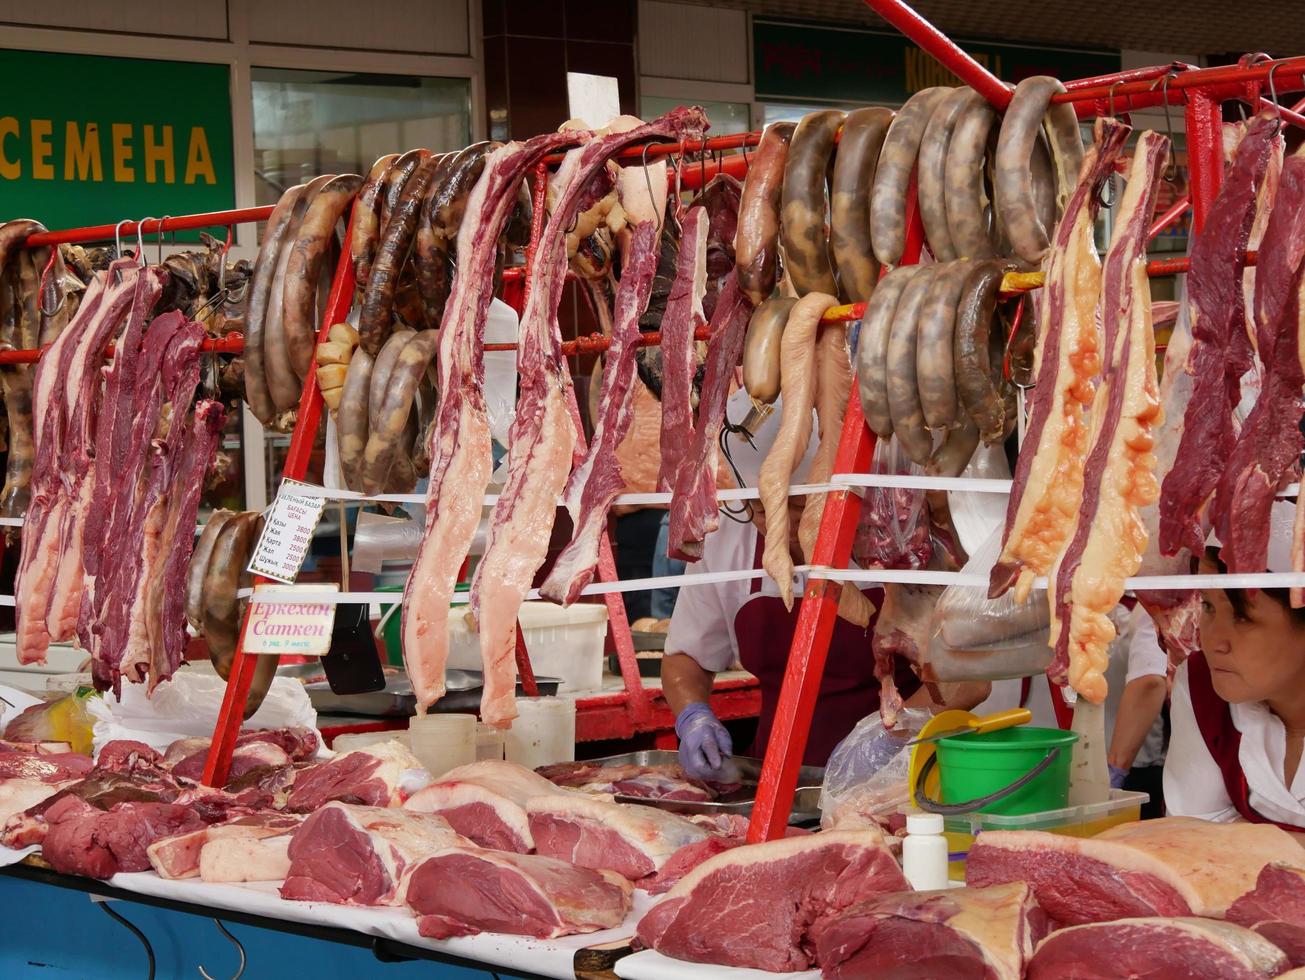 almaty, kazakhstan, 2019 - personnes dans la section viande du célèbre bazar vert d'almaty, kazakhstan, avec des marchandises exposées. photo